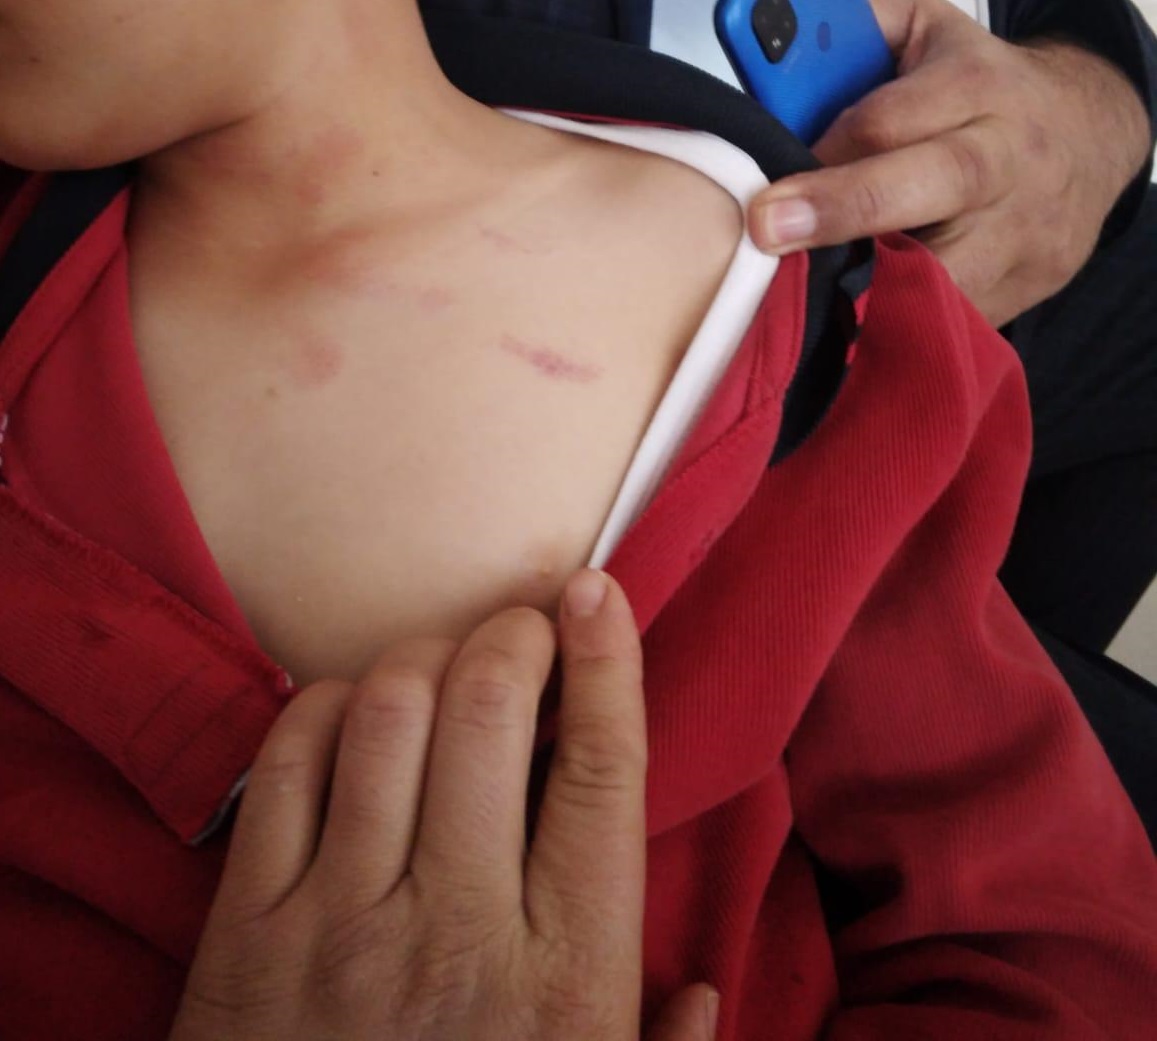 Afyon'da dövülen çocuk fotoğrafı